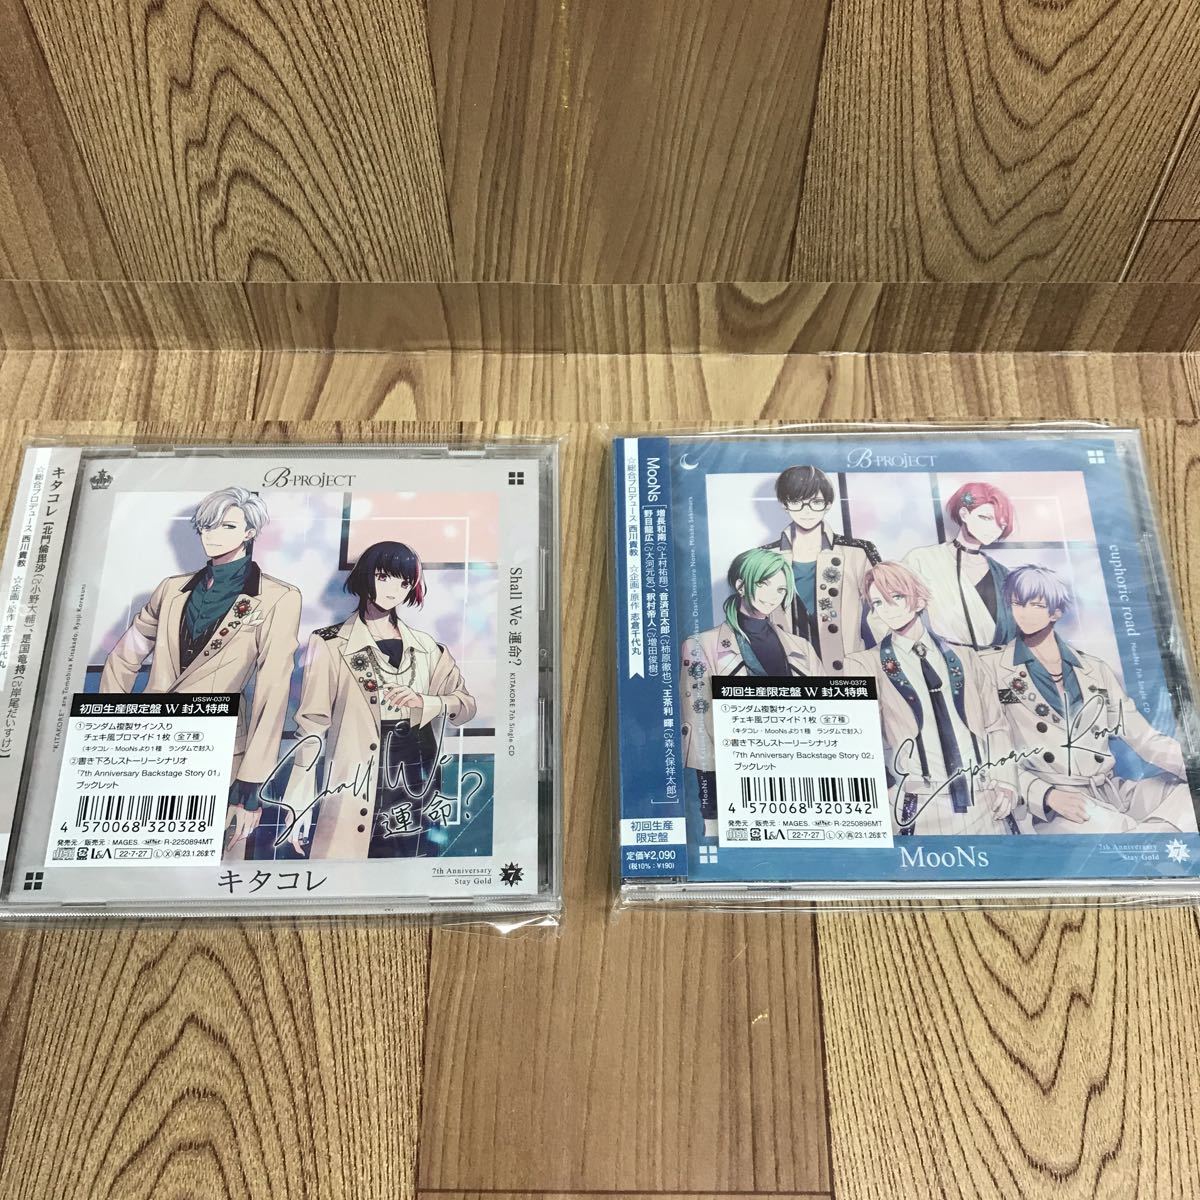 CD 2枚セット「B-PROJECT//Shall We 運命:キタコレ/euphoric road:MooNs」_画像1